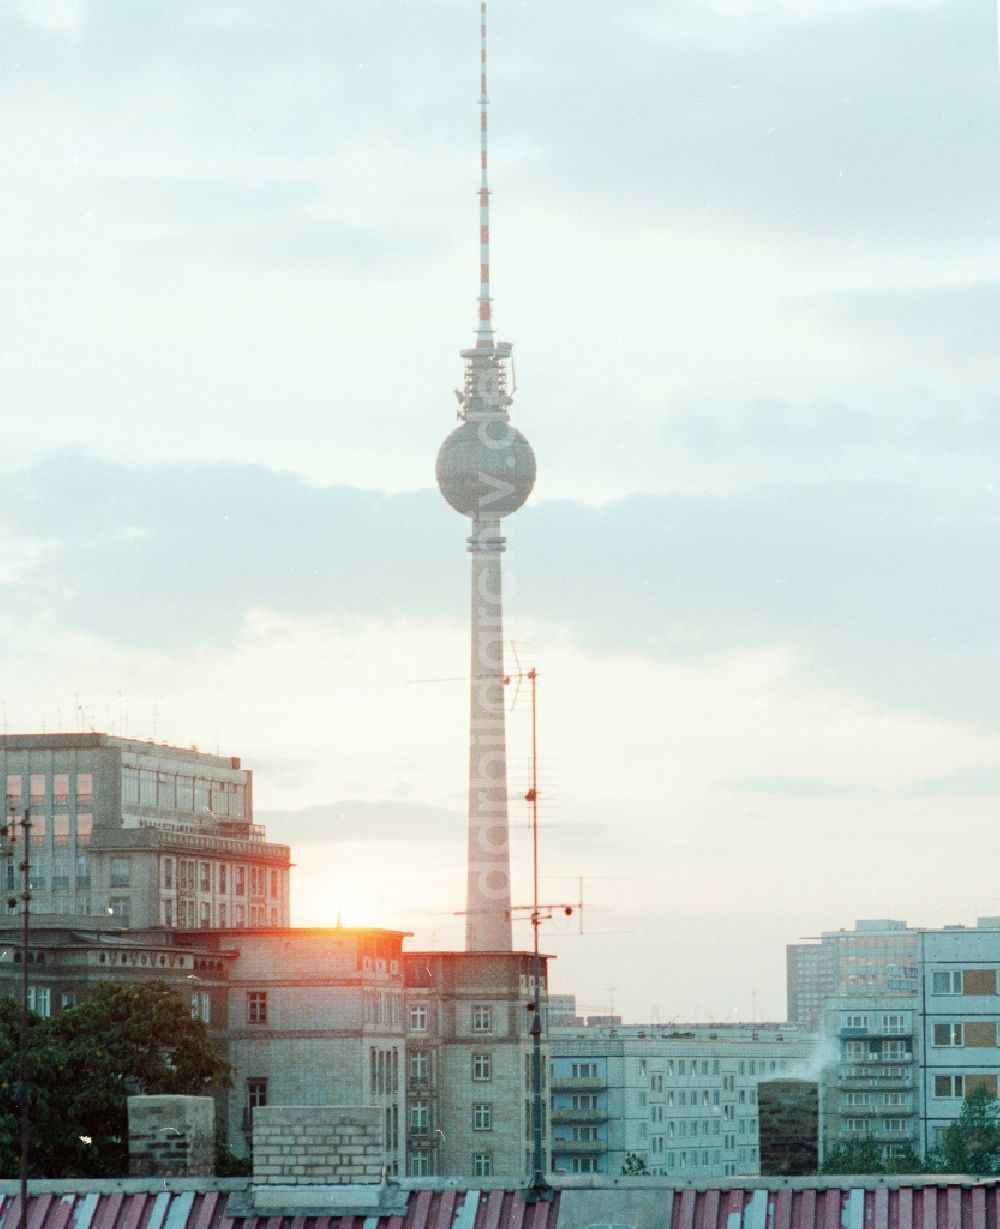 Berlin: Sonnenuntergang mit dem Fernsehturm in Berlin, der ehemaligen Hauptstadt der DDR, Deutsche Demokratische Republik